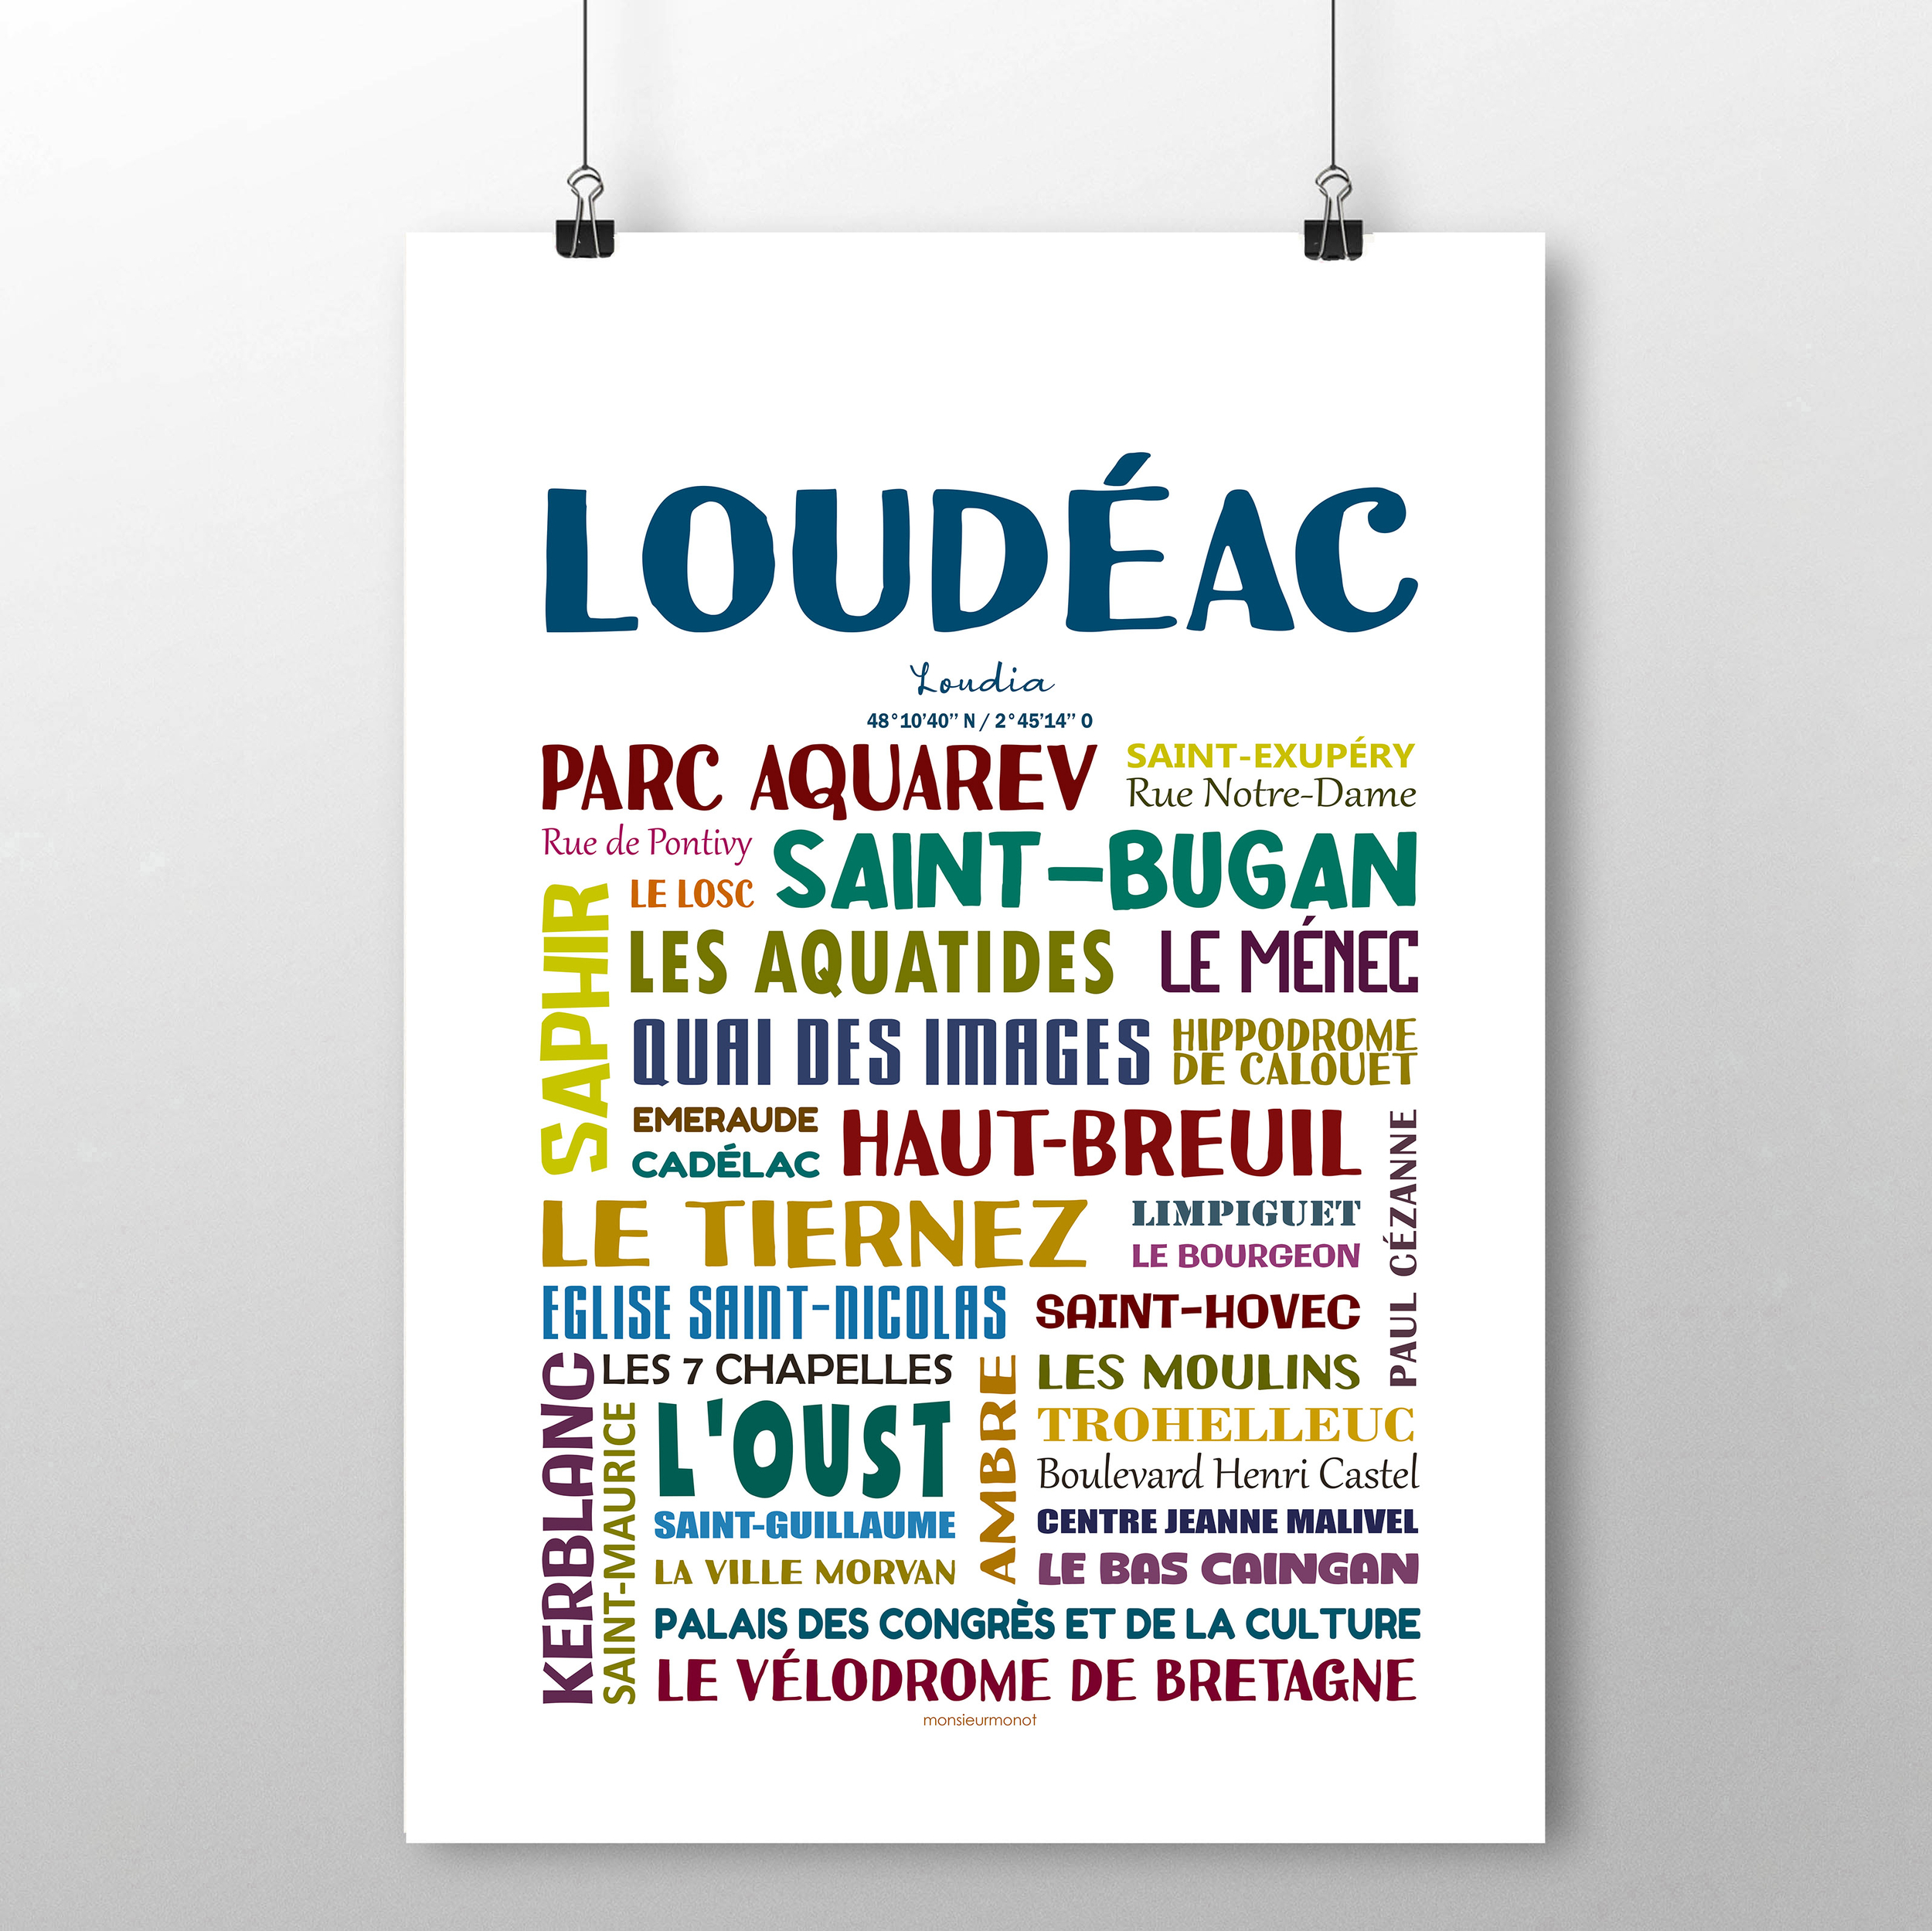 Loudéac 2